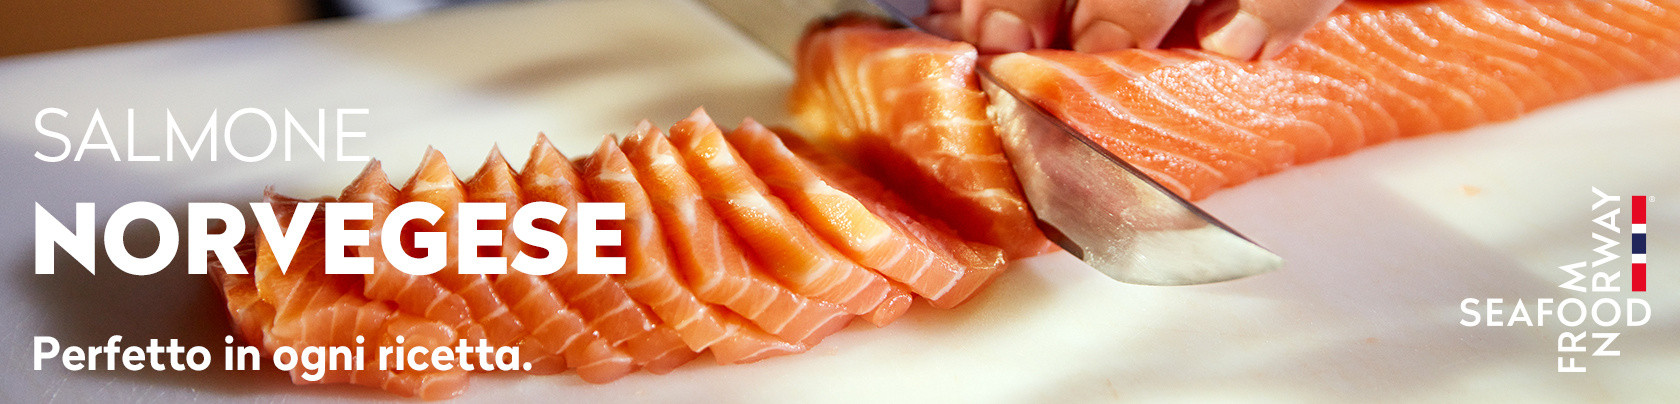 Salmone norvegese: perfetto in ogni ricetta